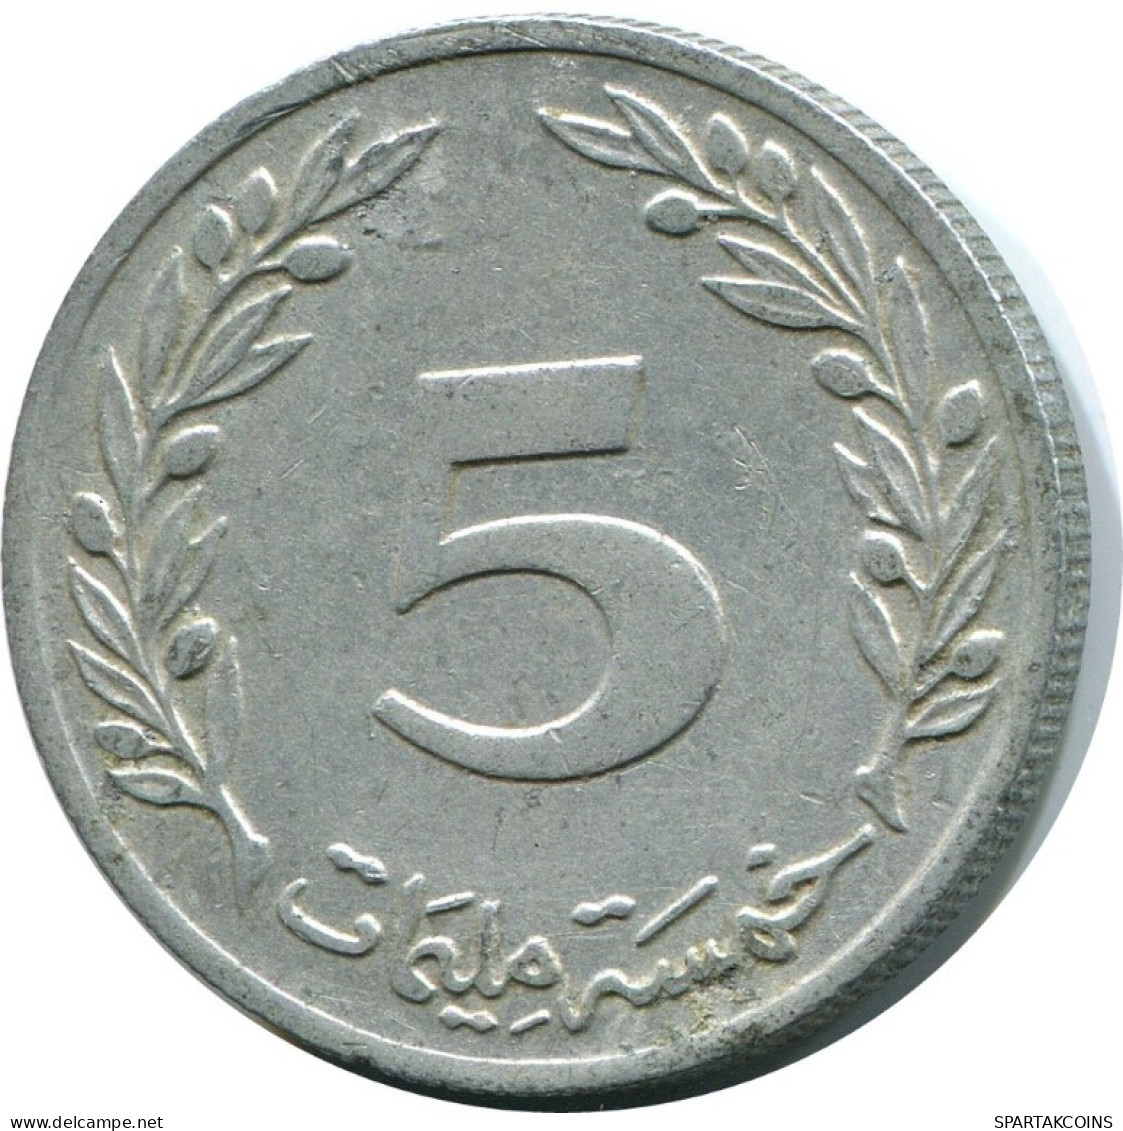 5 MILLIMES 1983 TUNISIA Coin #AH891.U.A - Túnez